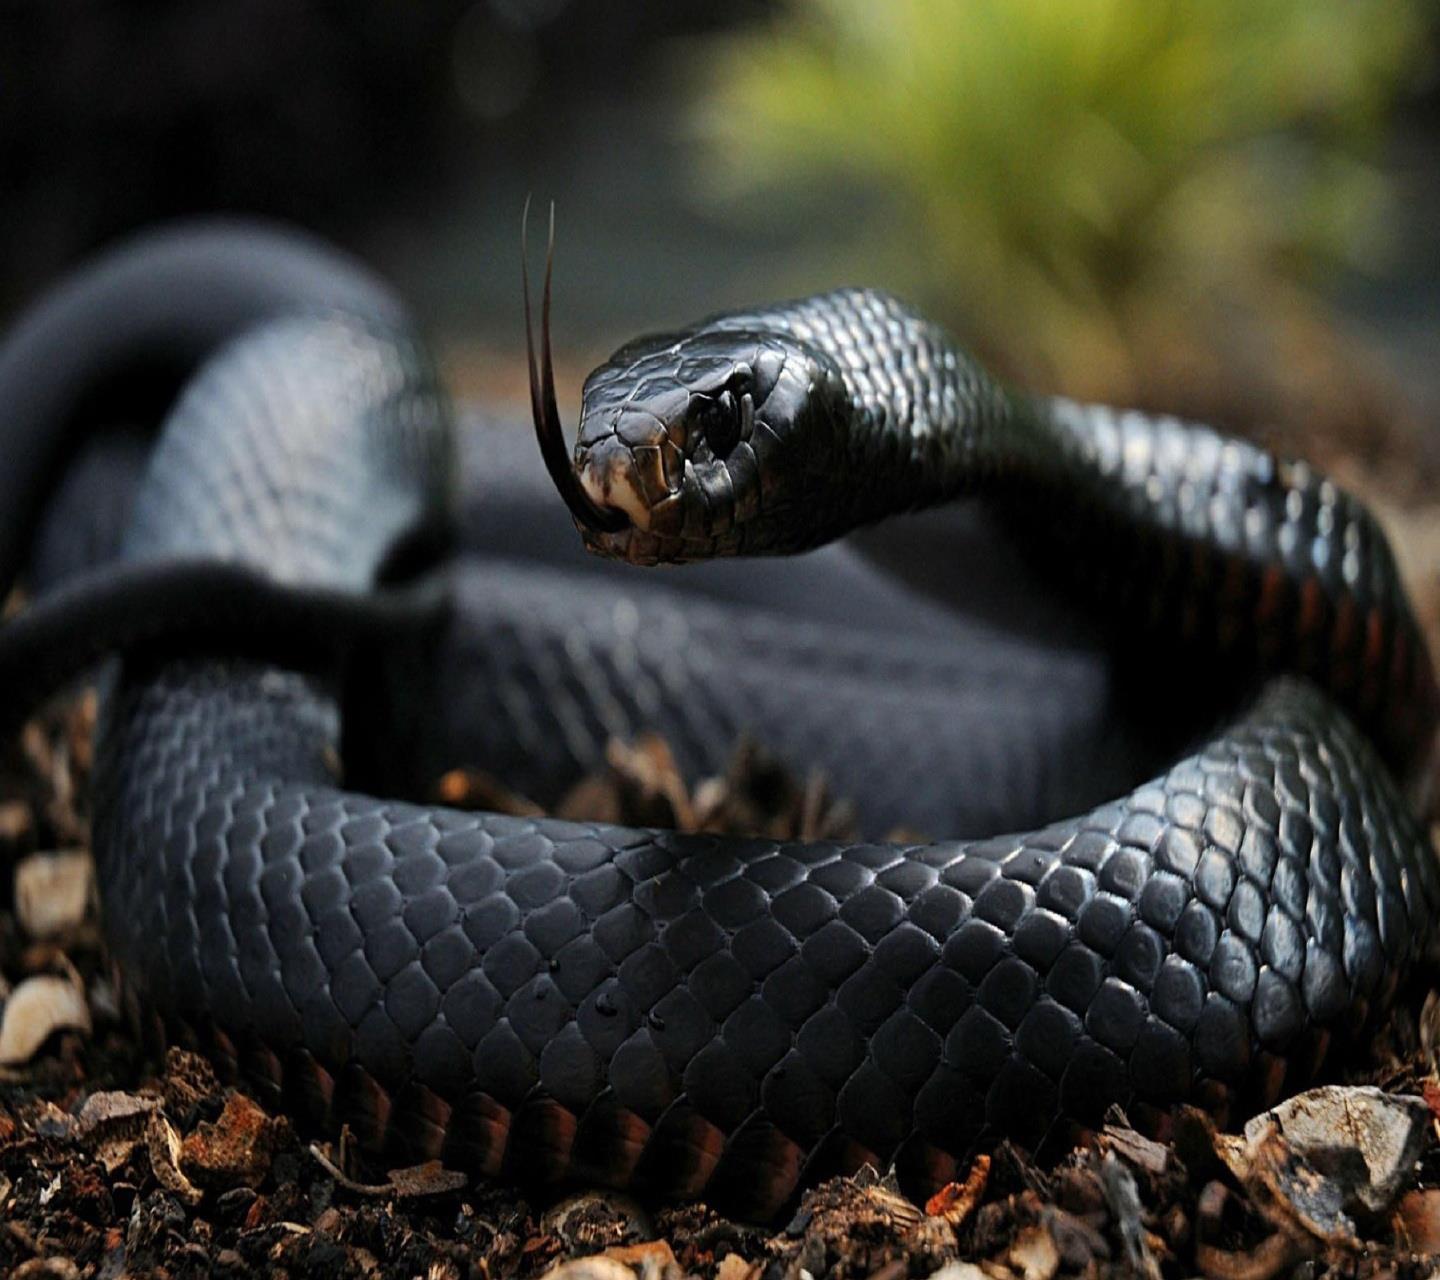 Un serpente nero - Sfondi per Android, i più belli da scaricare gratis